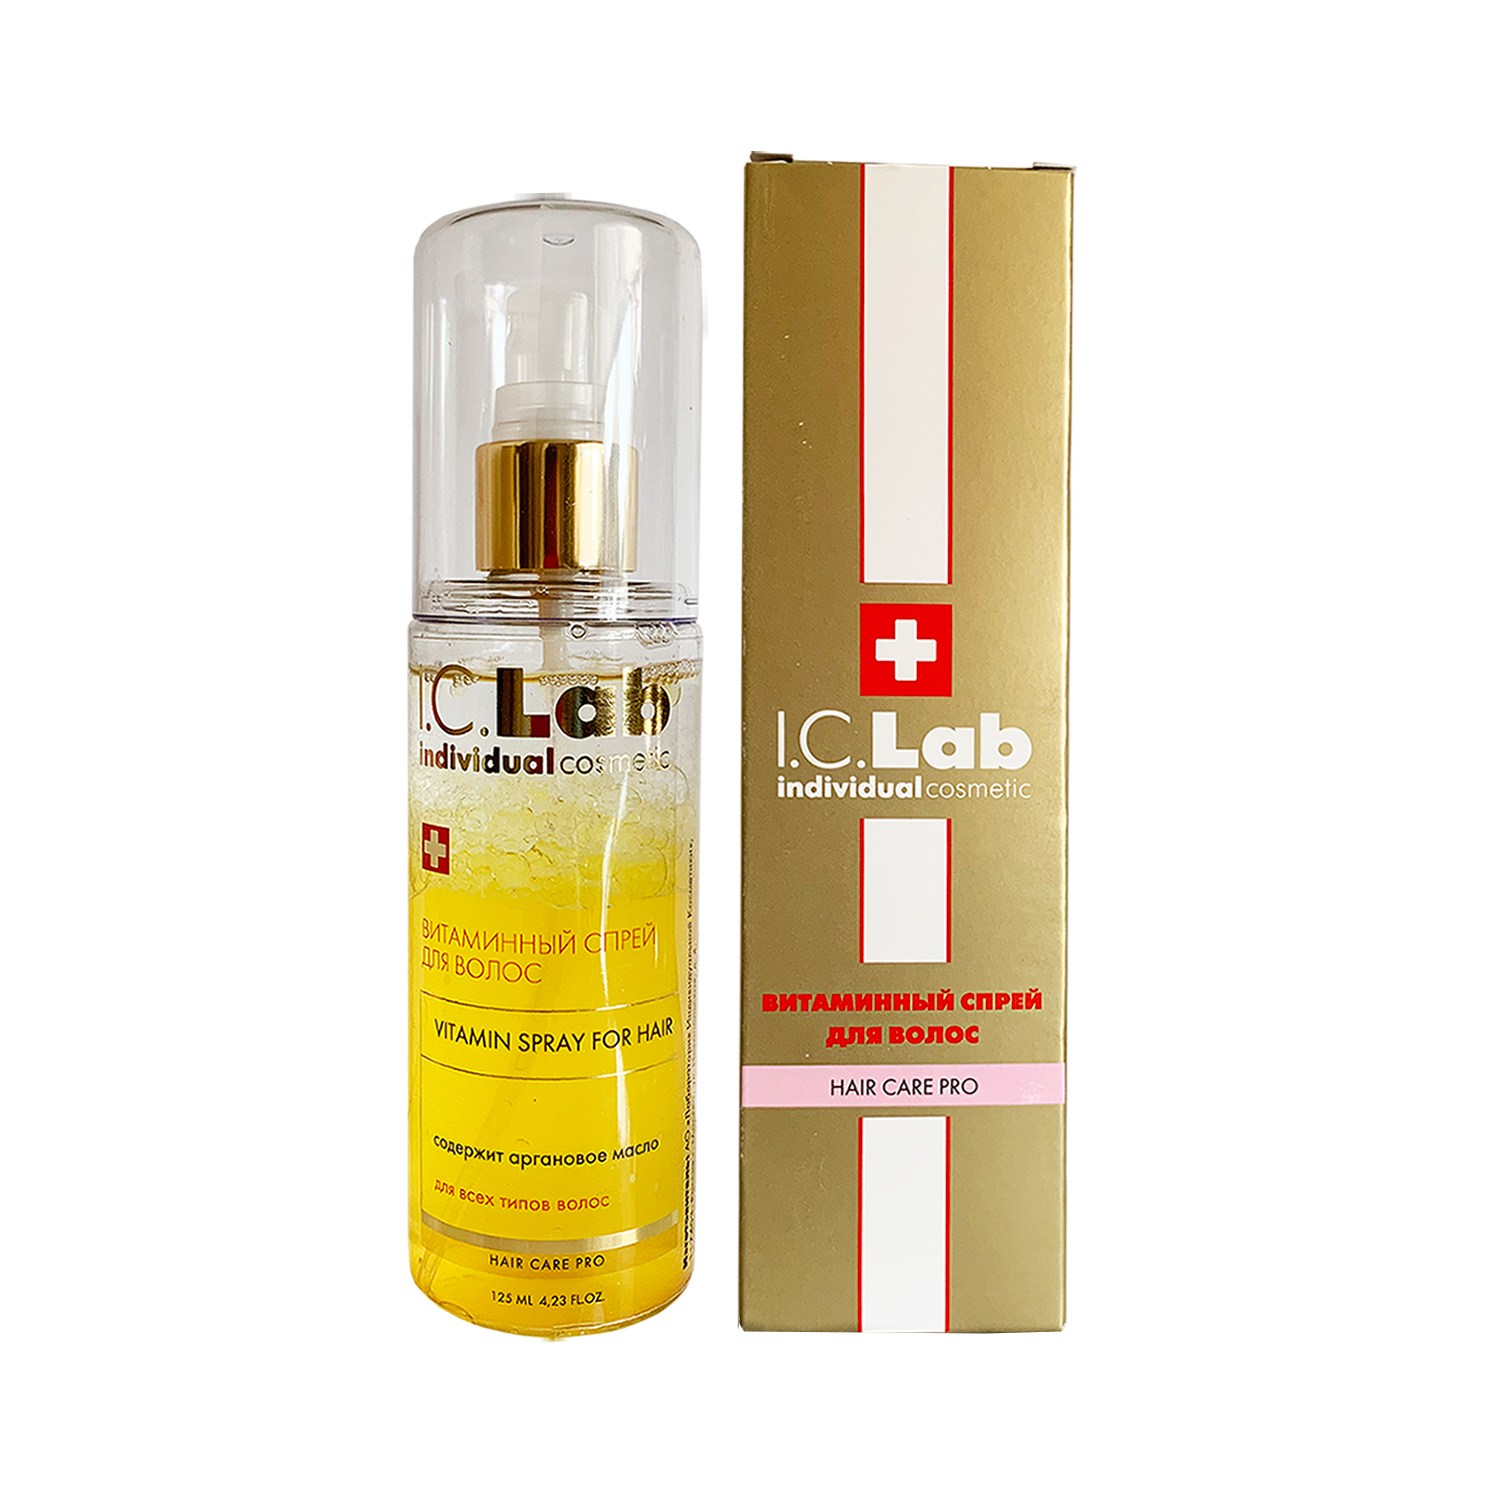 Витаминный спрей для волос I.C.Lab Individual cosmetic энергетический витаминный тоник спрей